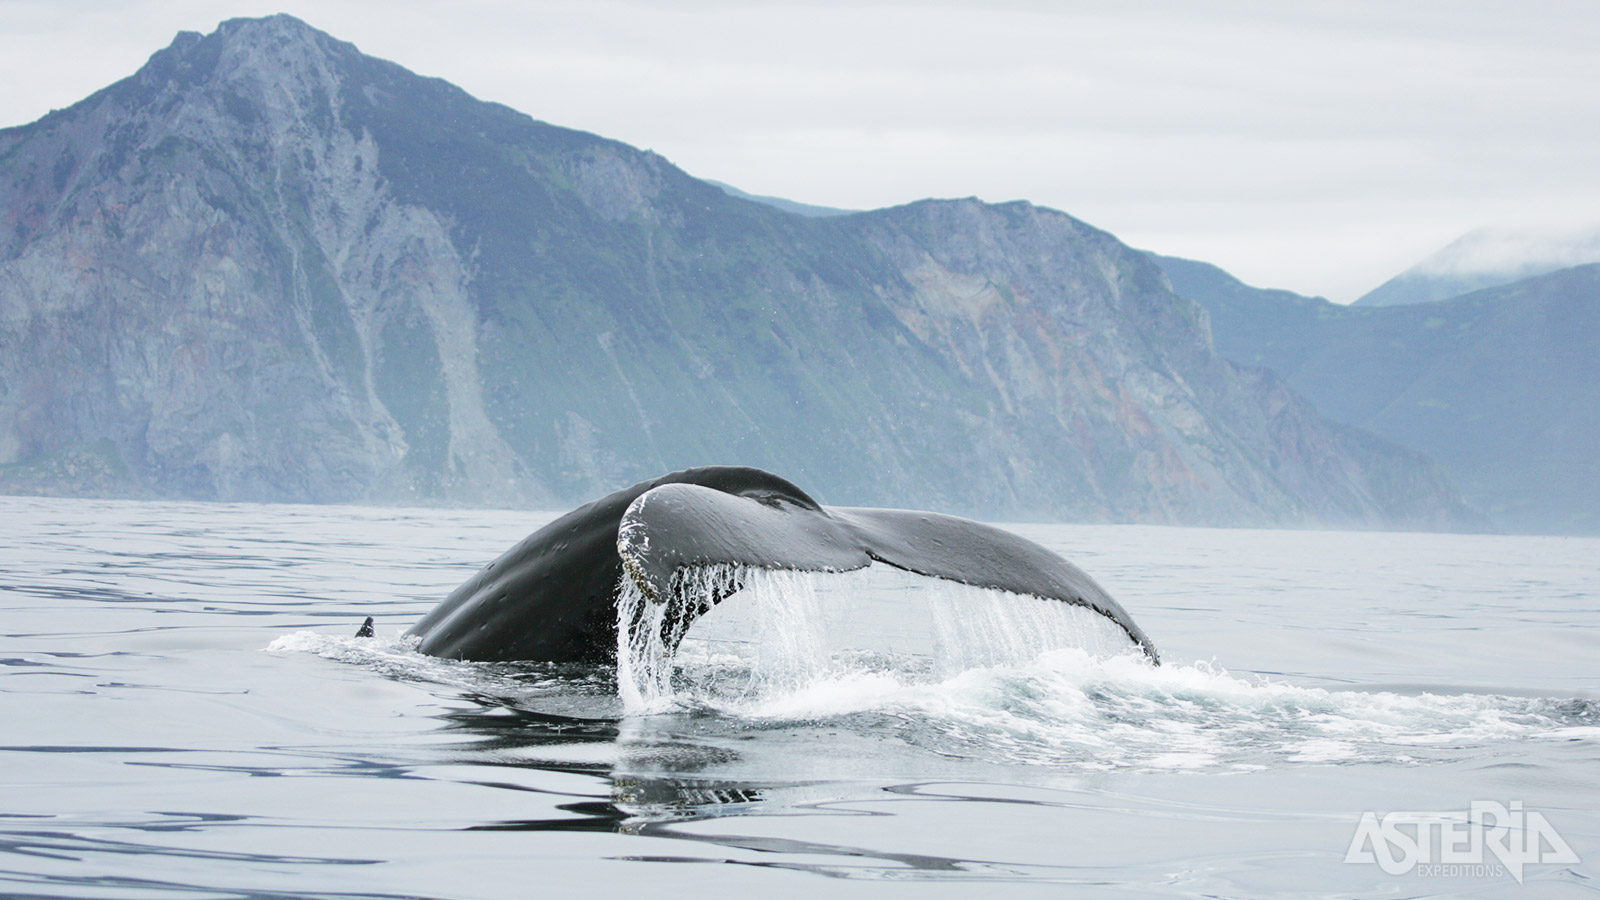 Met wat geluk spot je tijdens de zeiltocht walvissen -en dolfijnen